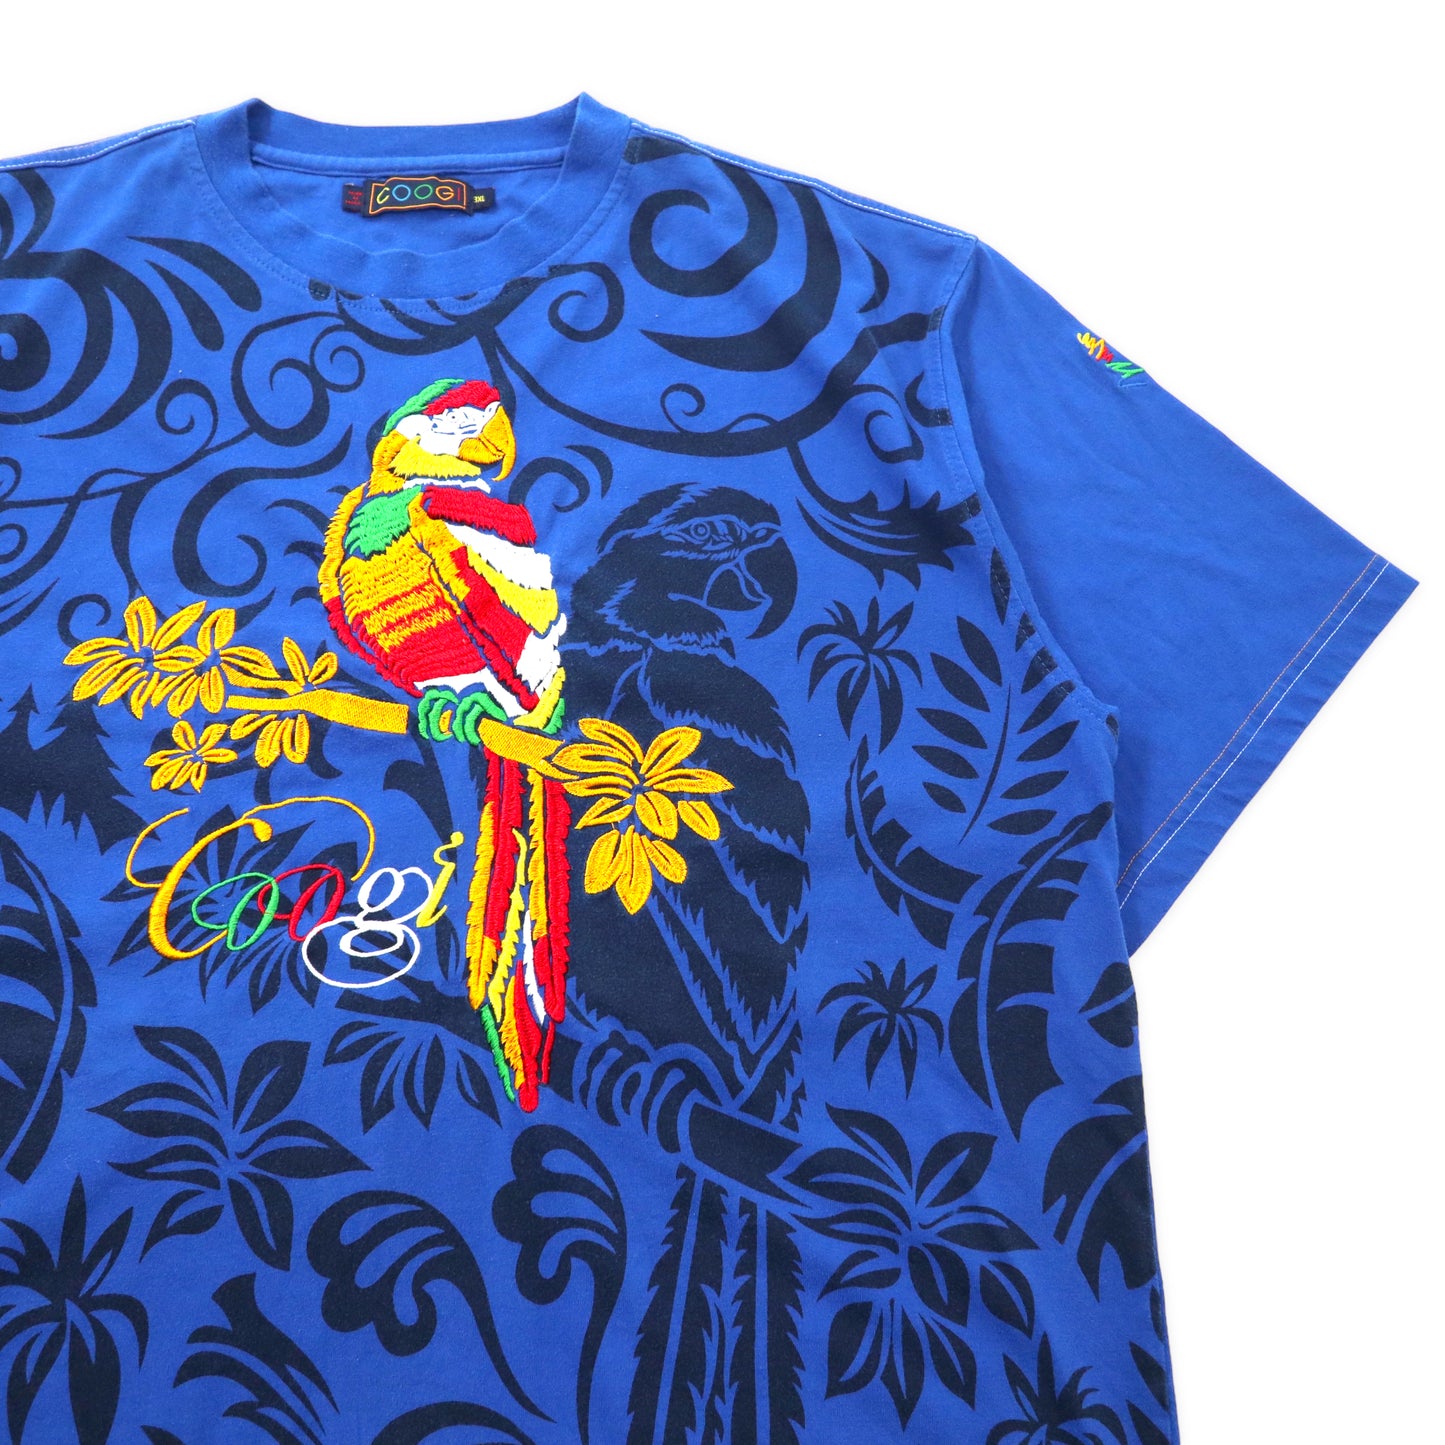 COOGI アニマル刺繍 Tシャツ 3XL ブルー コットン 総柄 ビッグサイズ